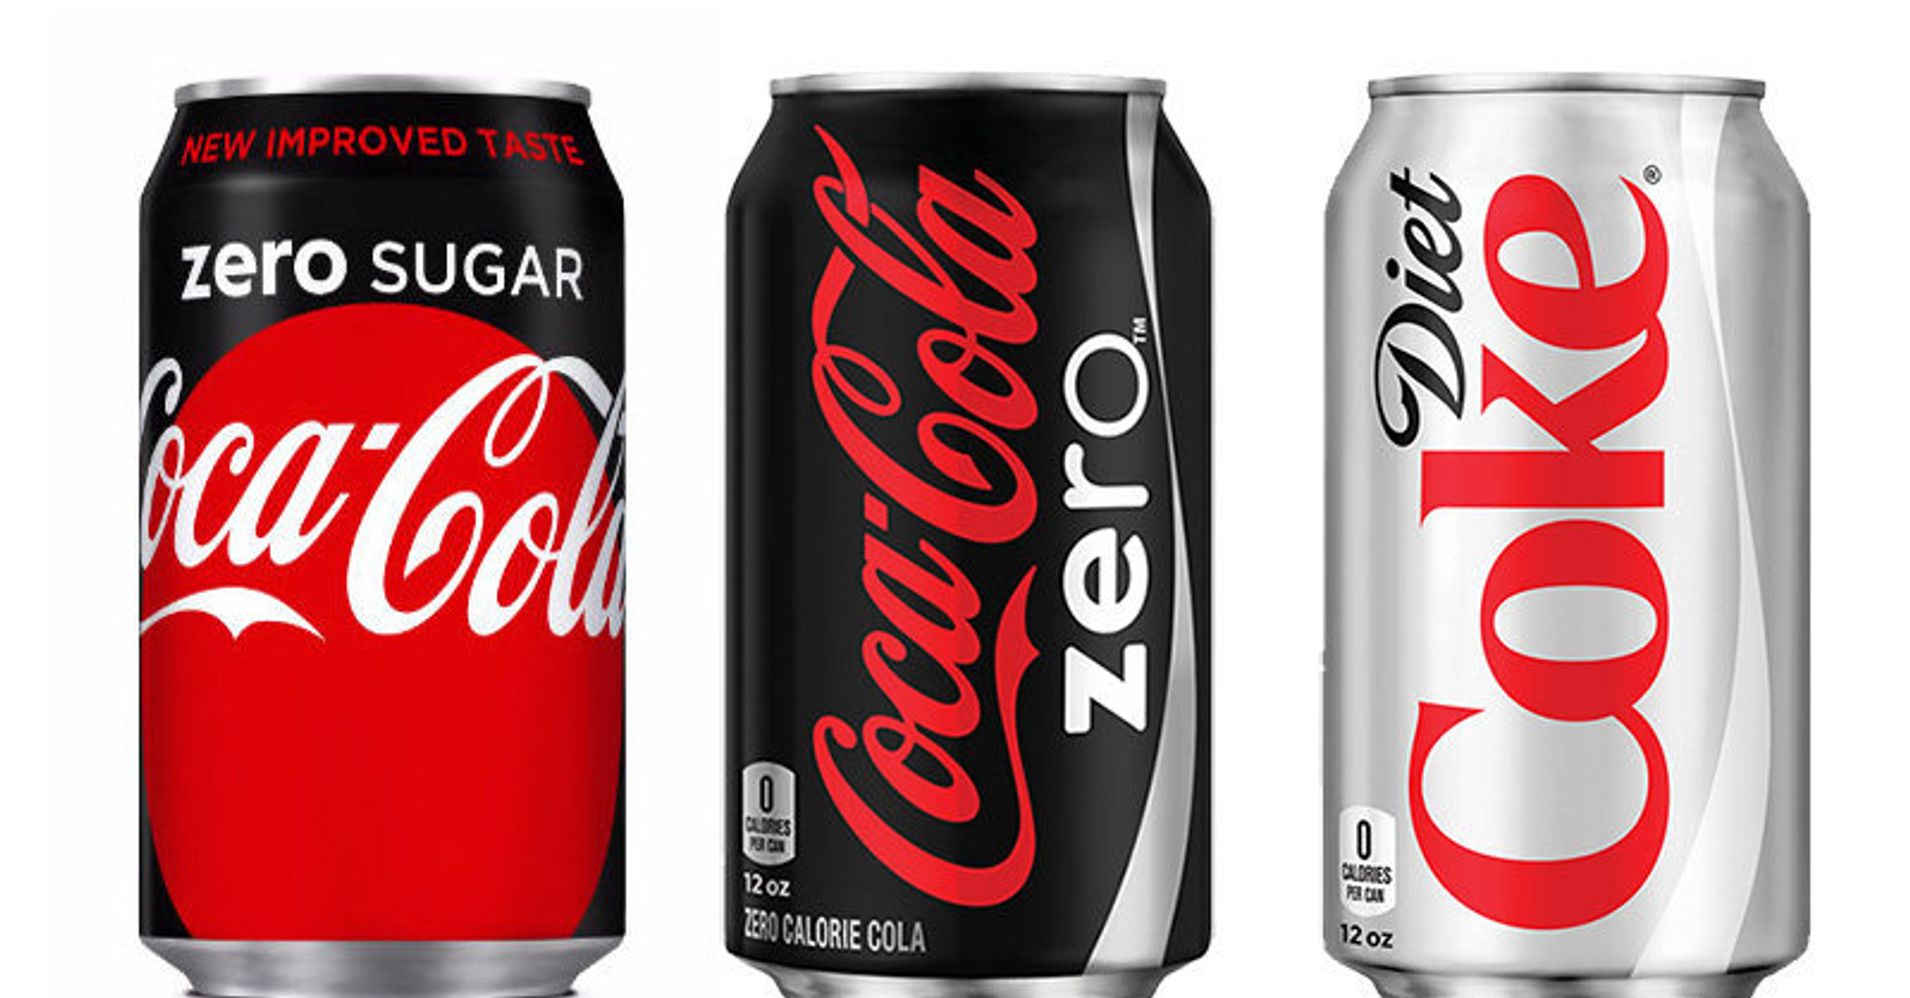 what is coke zero sugar vs diet coke